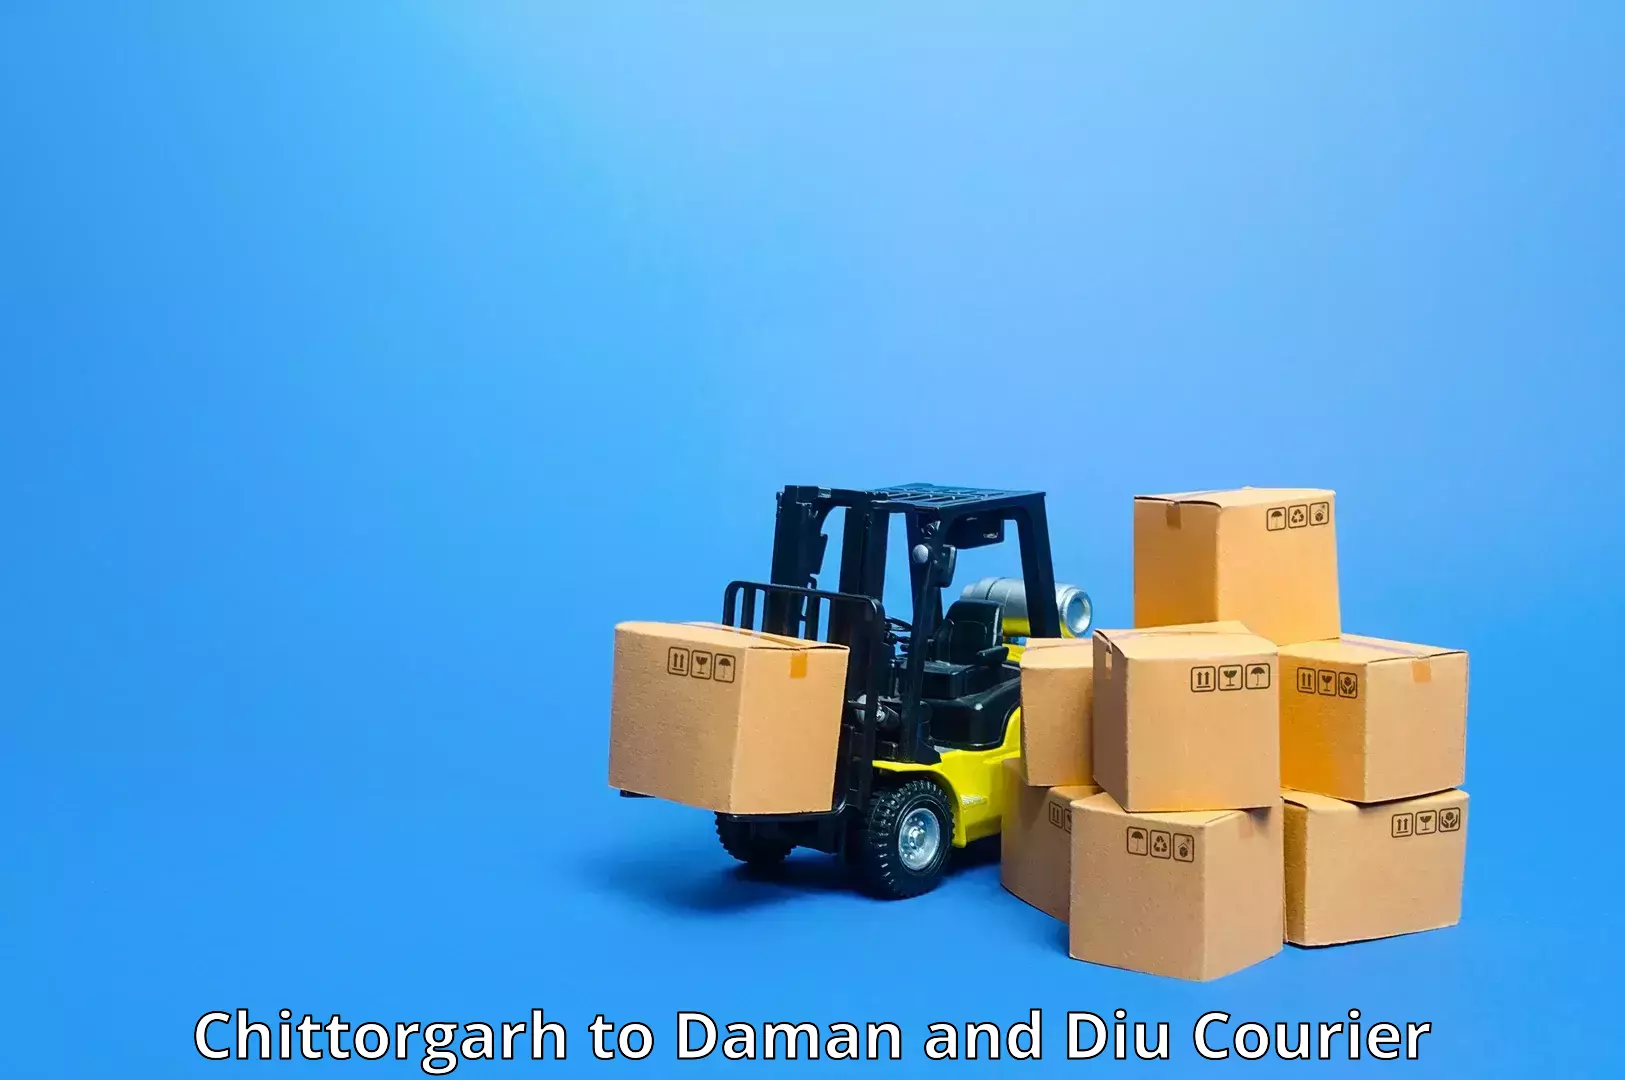 Urban courier service Chittorgarh to Daman